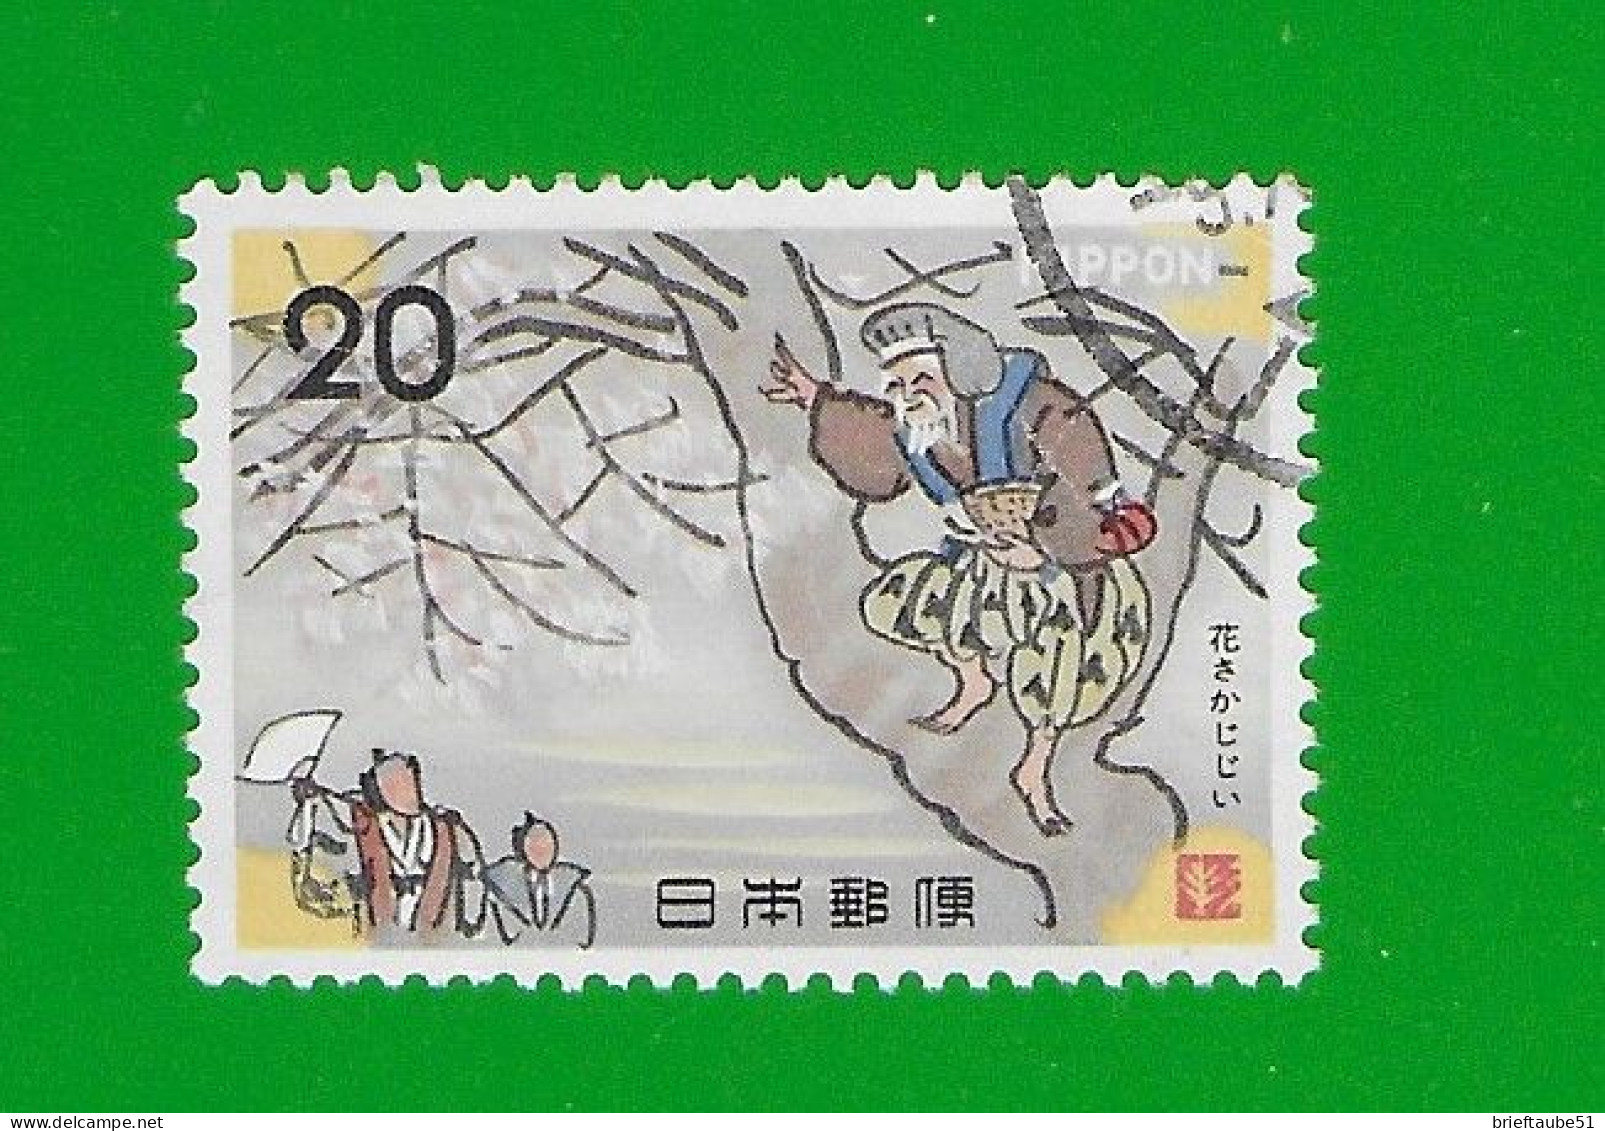 JAPAN 1973  Gestempelt°used/Bedarf # Michel-Nr. 1195  #  VOLKSMÄRCHEN #  "Alter Mann Auf Einem Baum" - Used Stamps